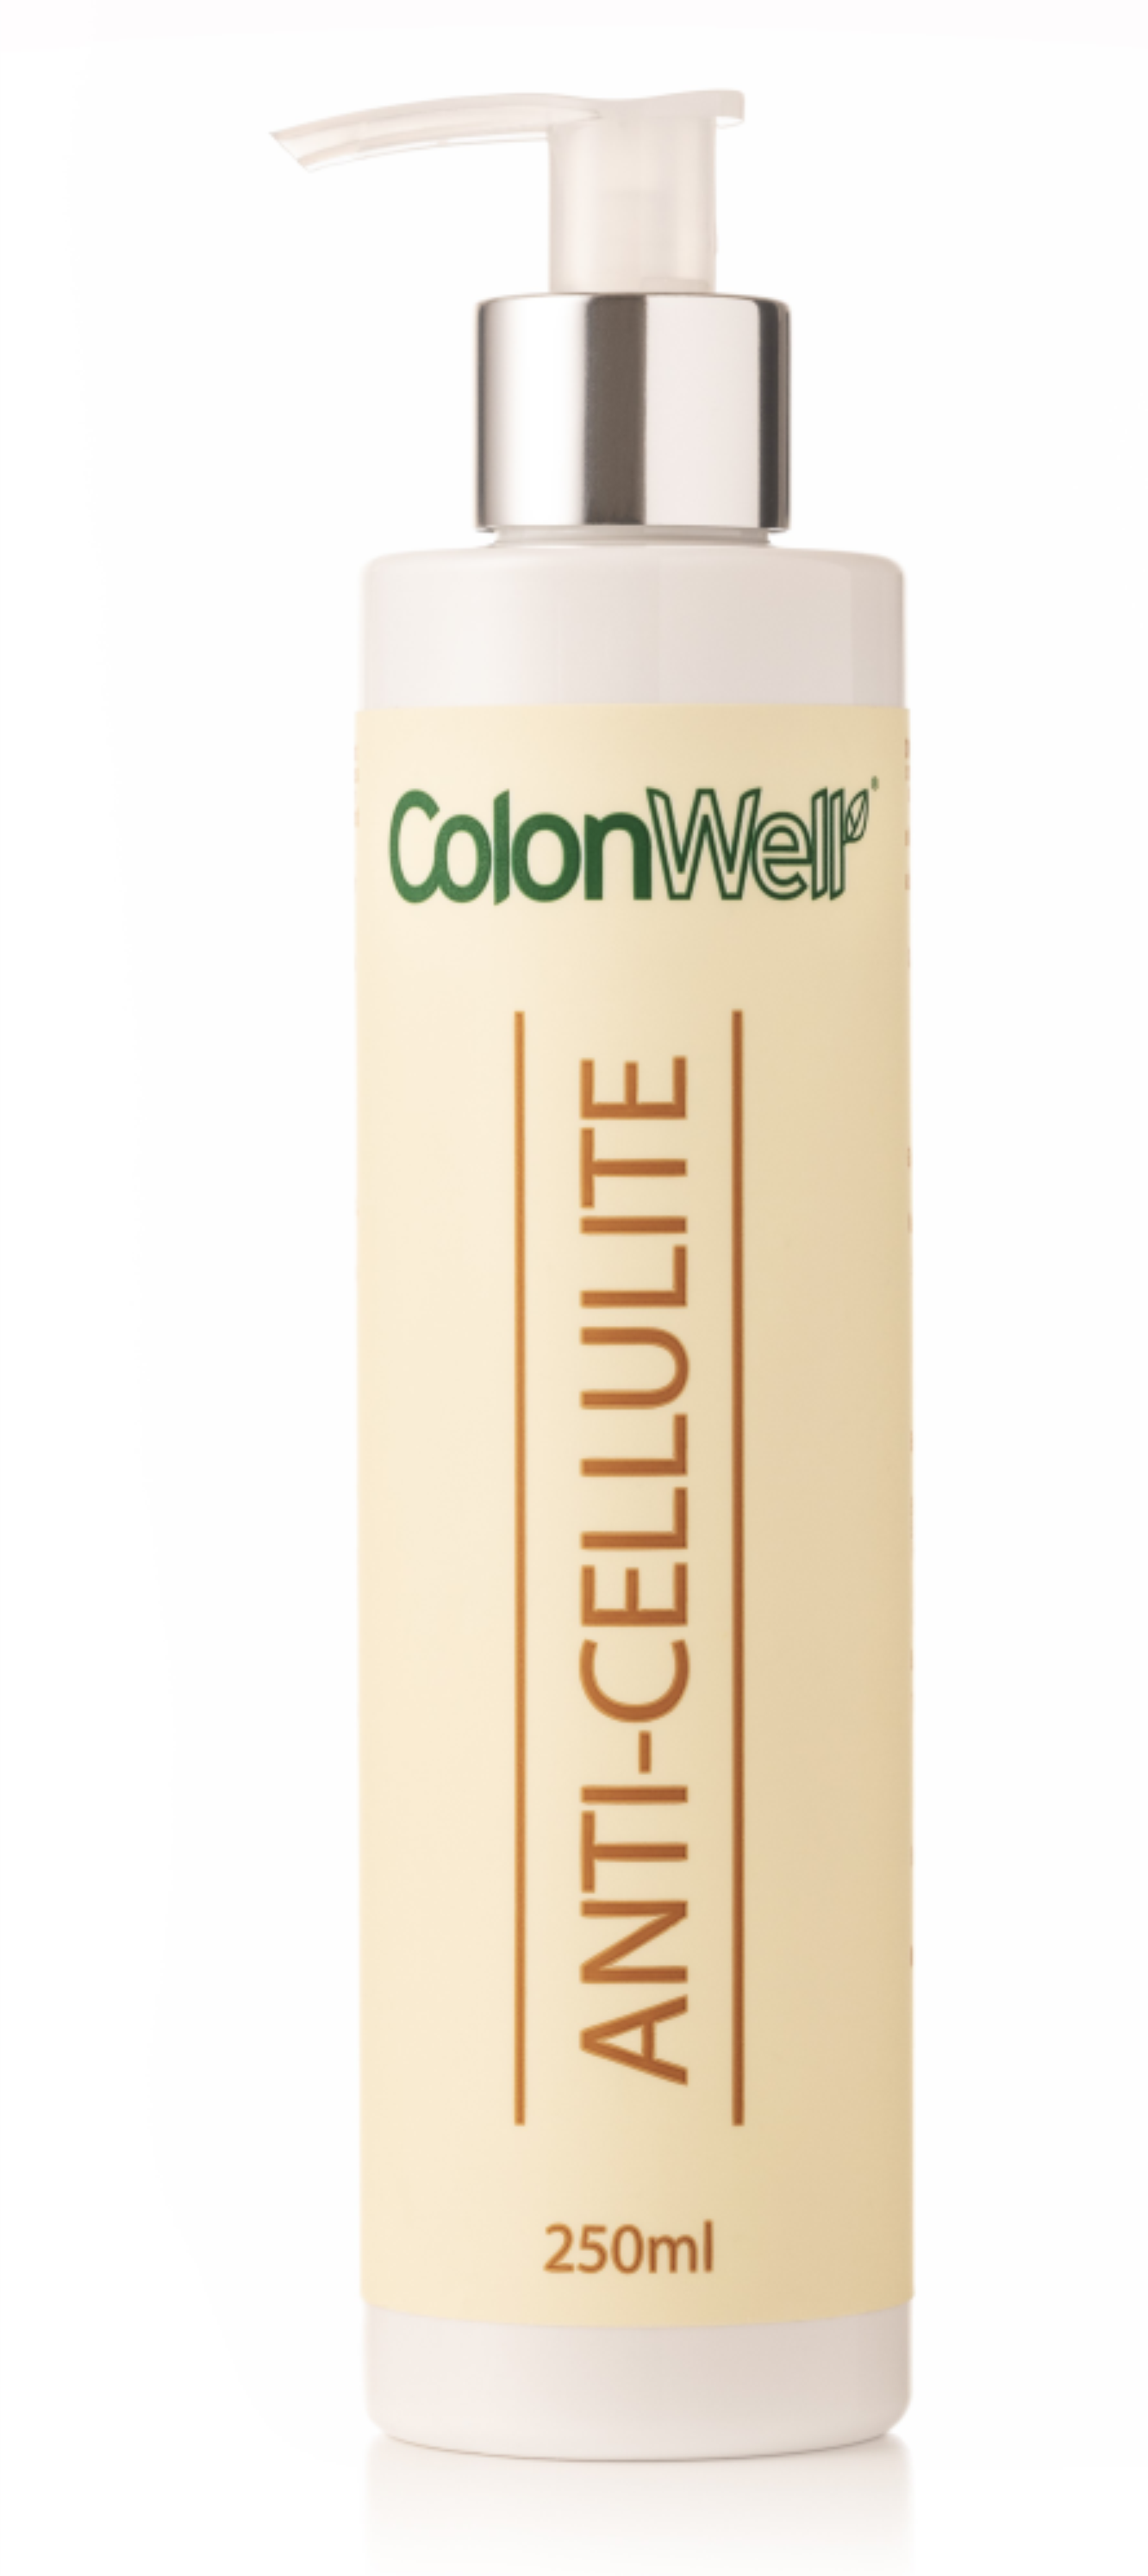 Colonwell.lt produktas - ColonWell anticeliulitinis, stangrinamasis kremas